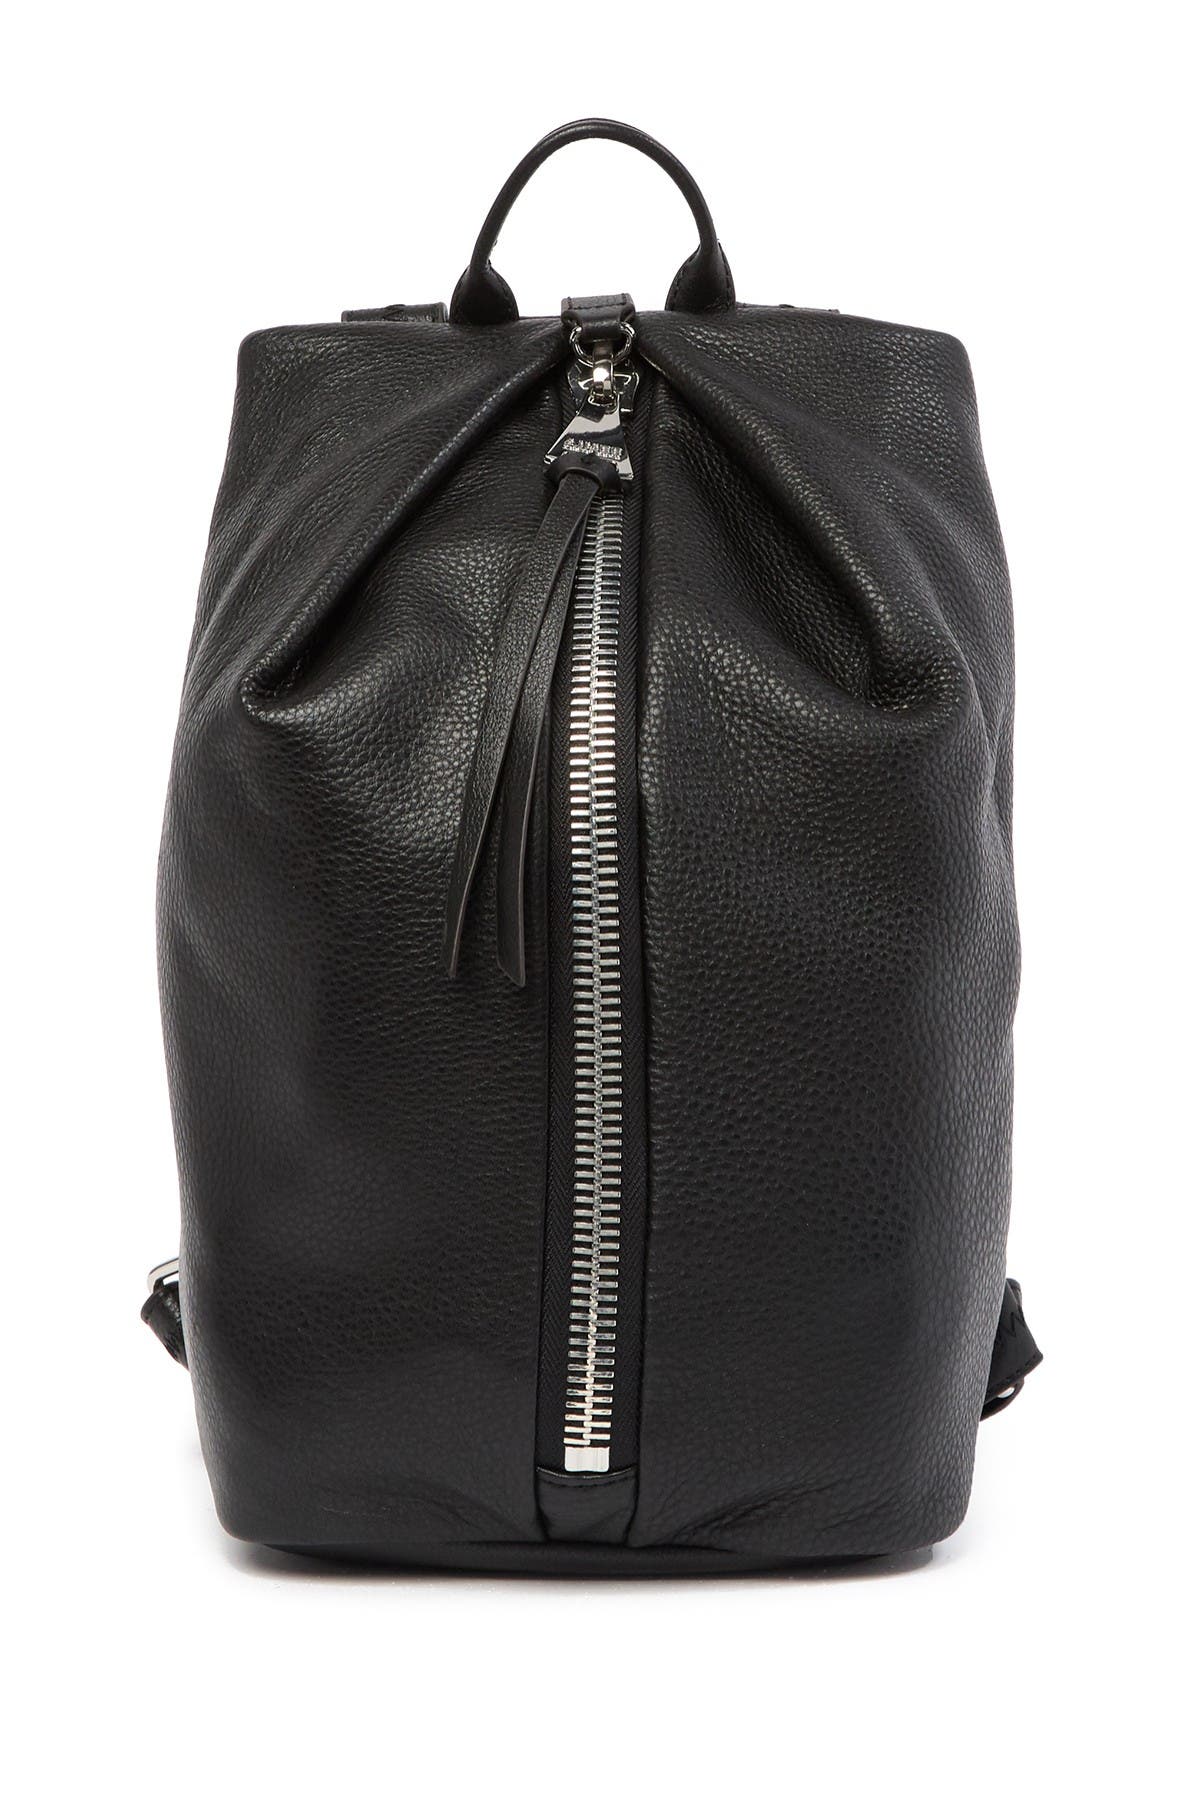 Aimee Kestenberg Tamitha Leather Backpack In Black